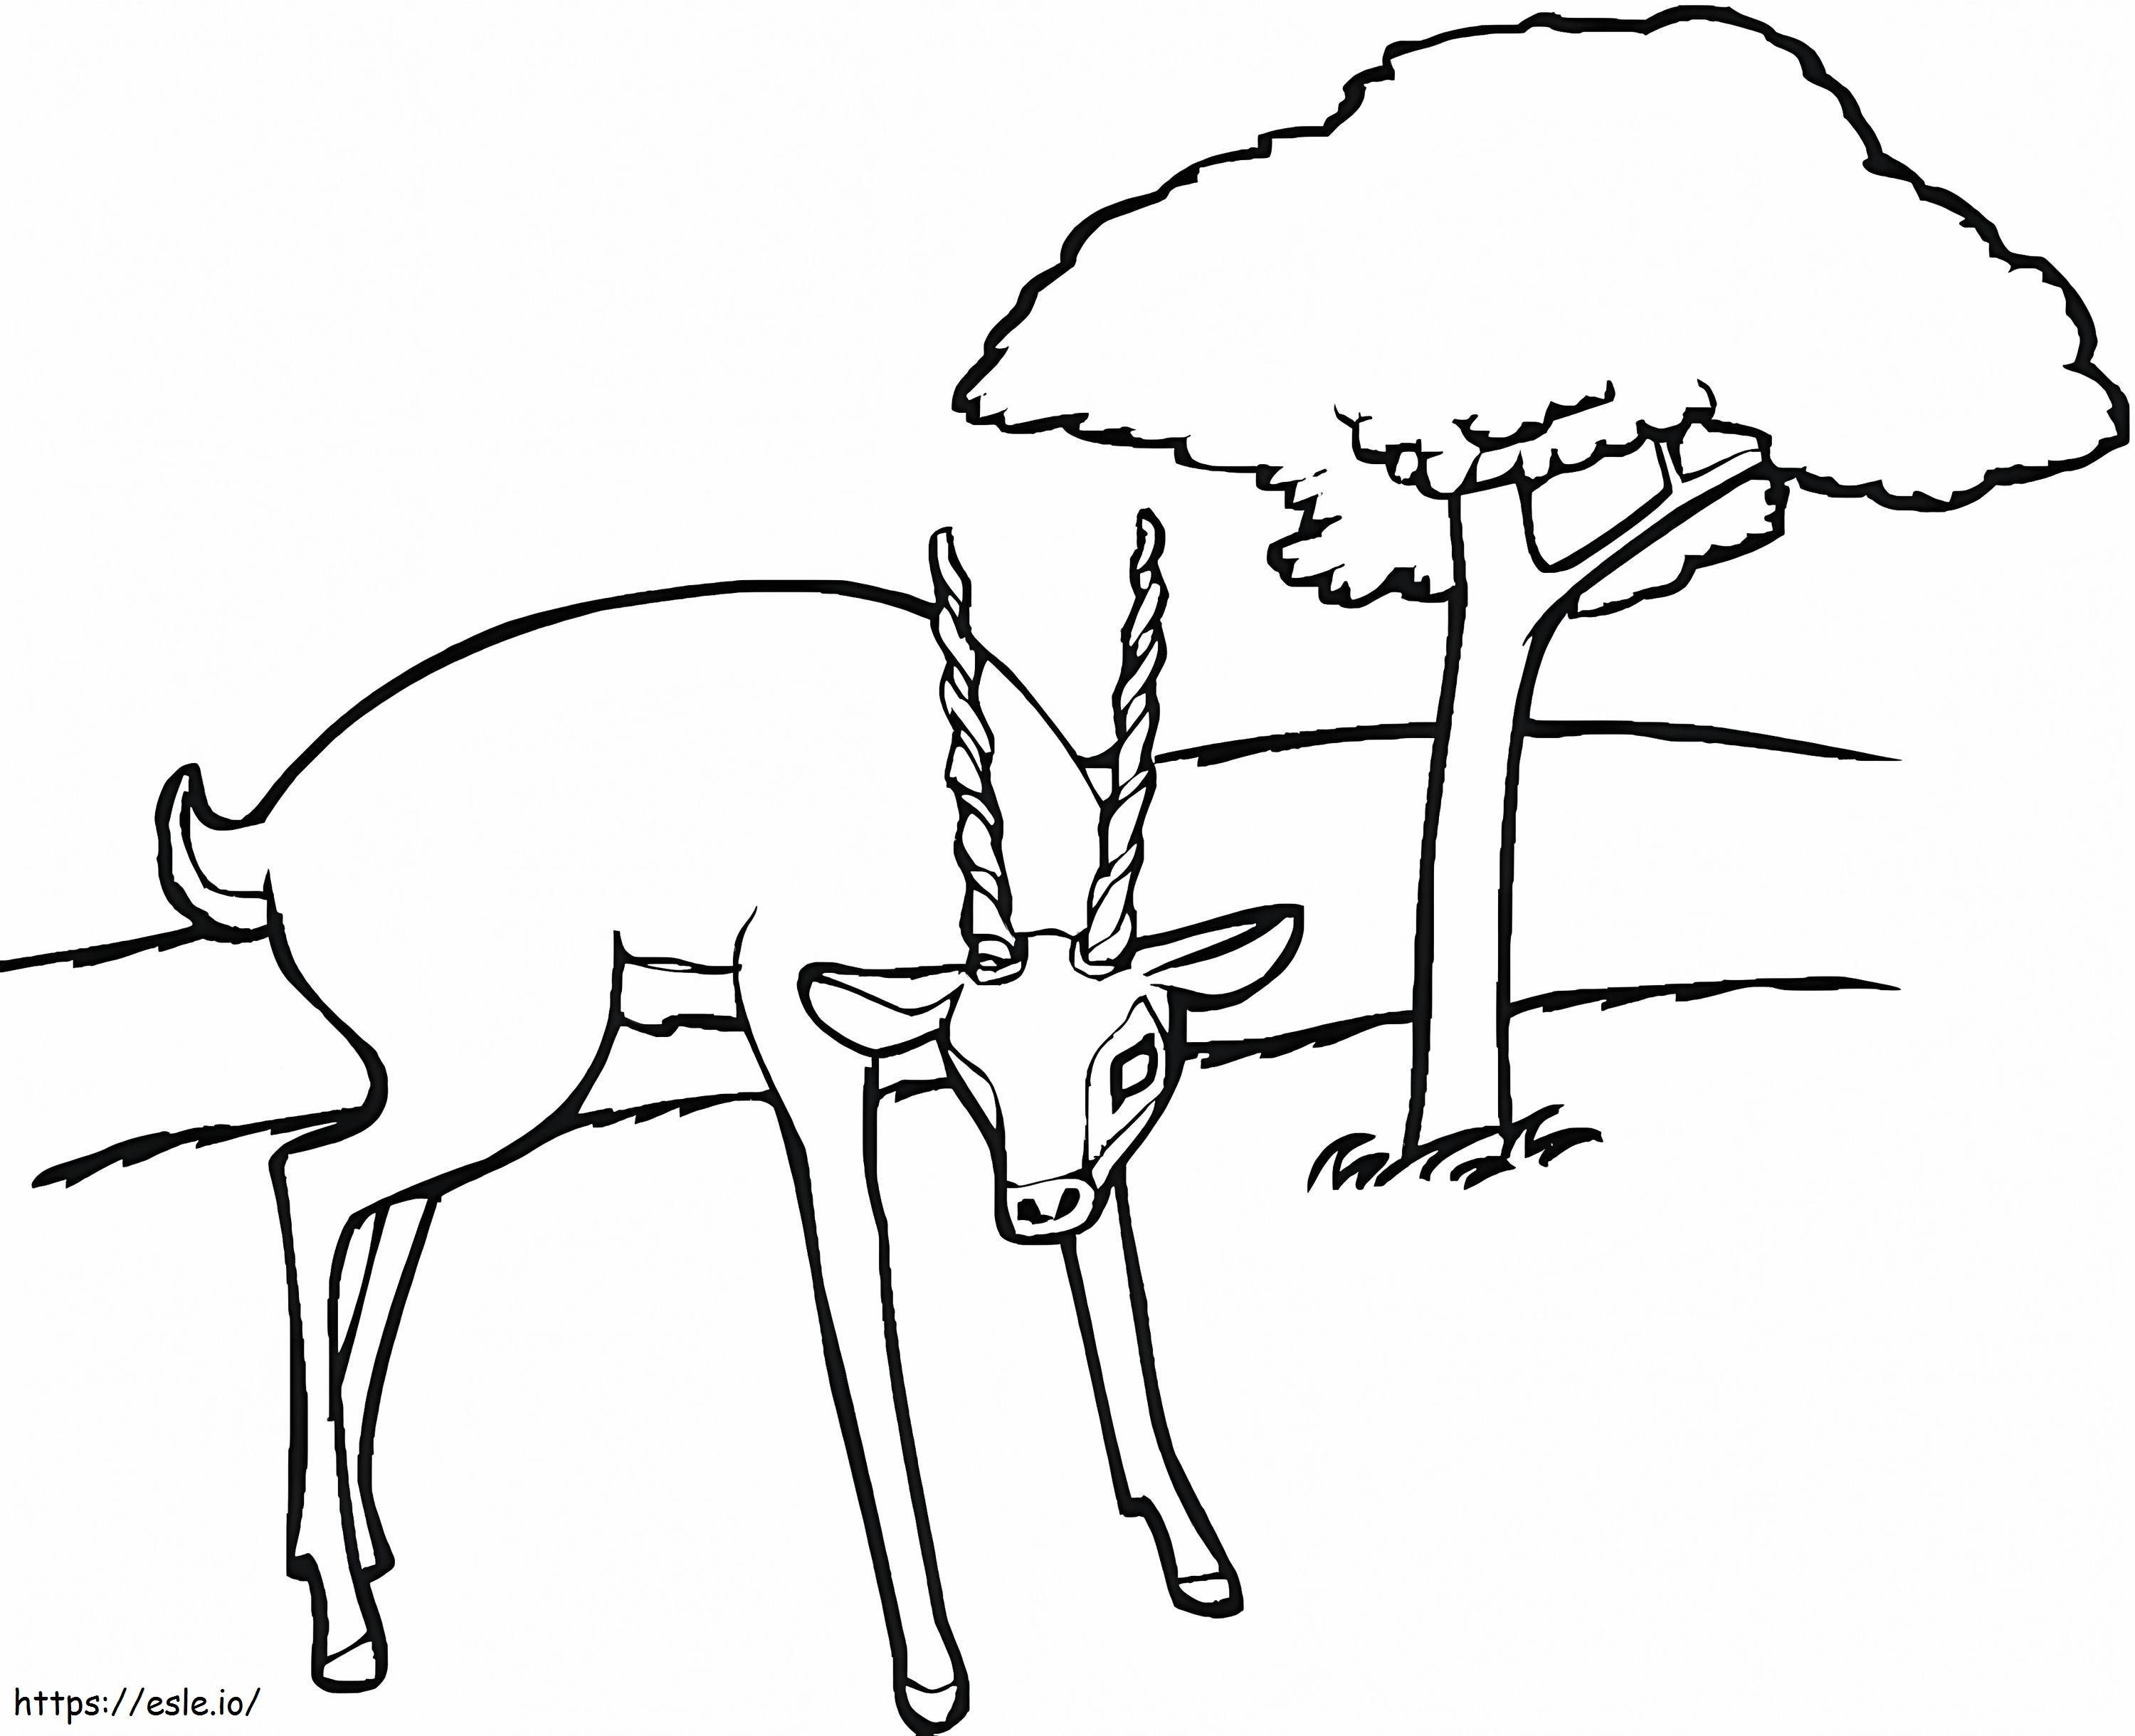 Antilope Nella Foresta da colorare